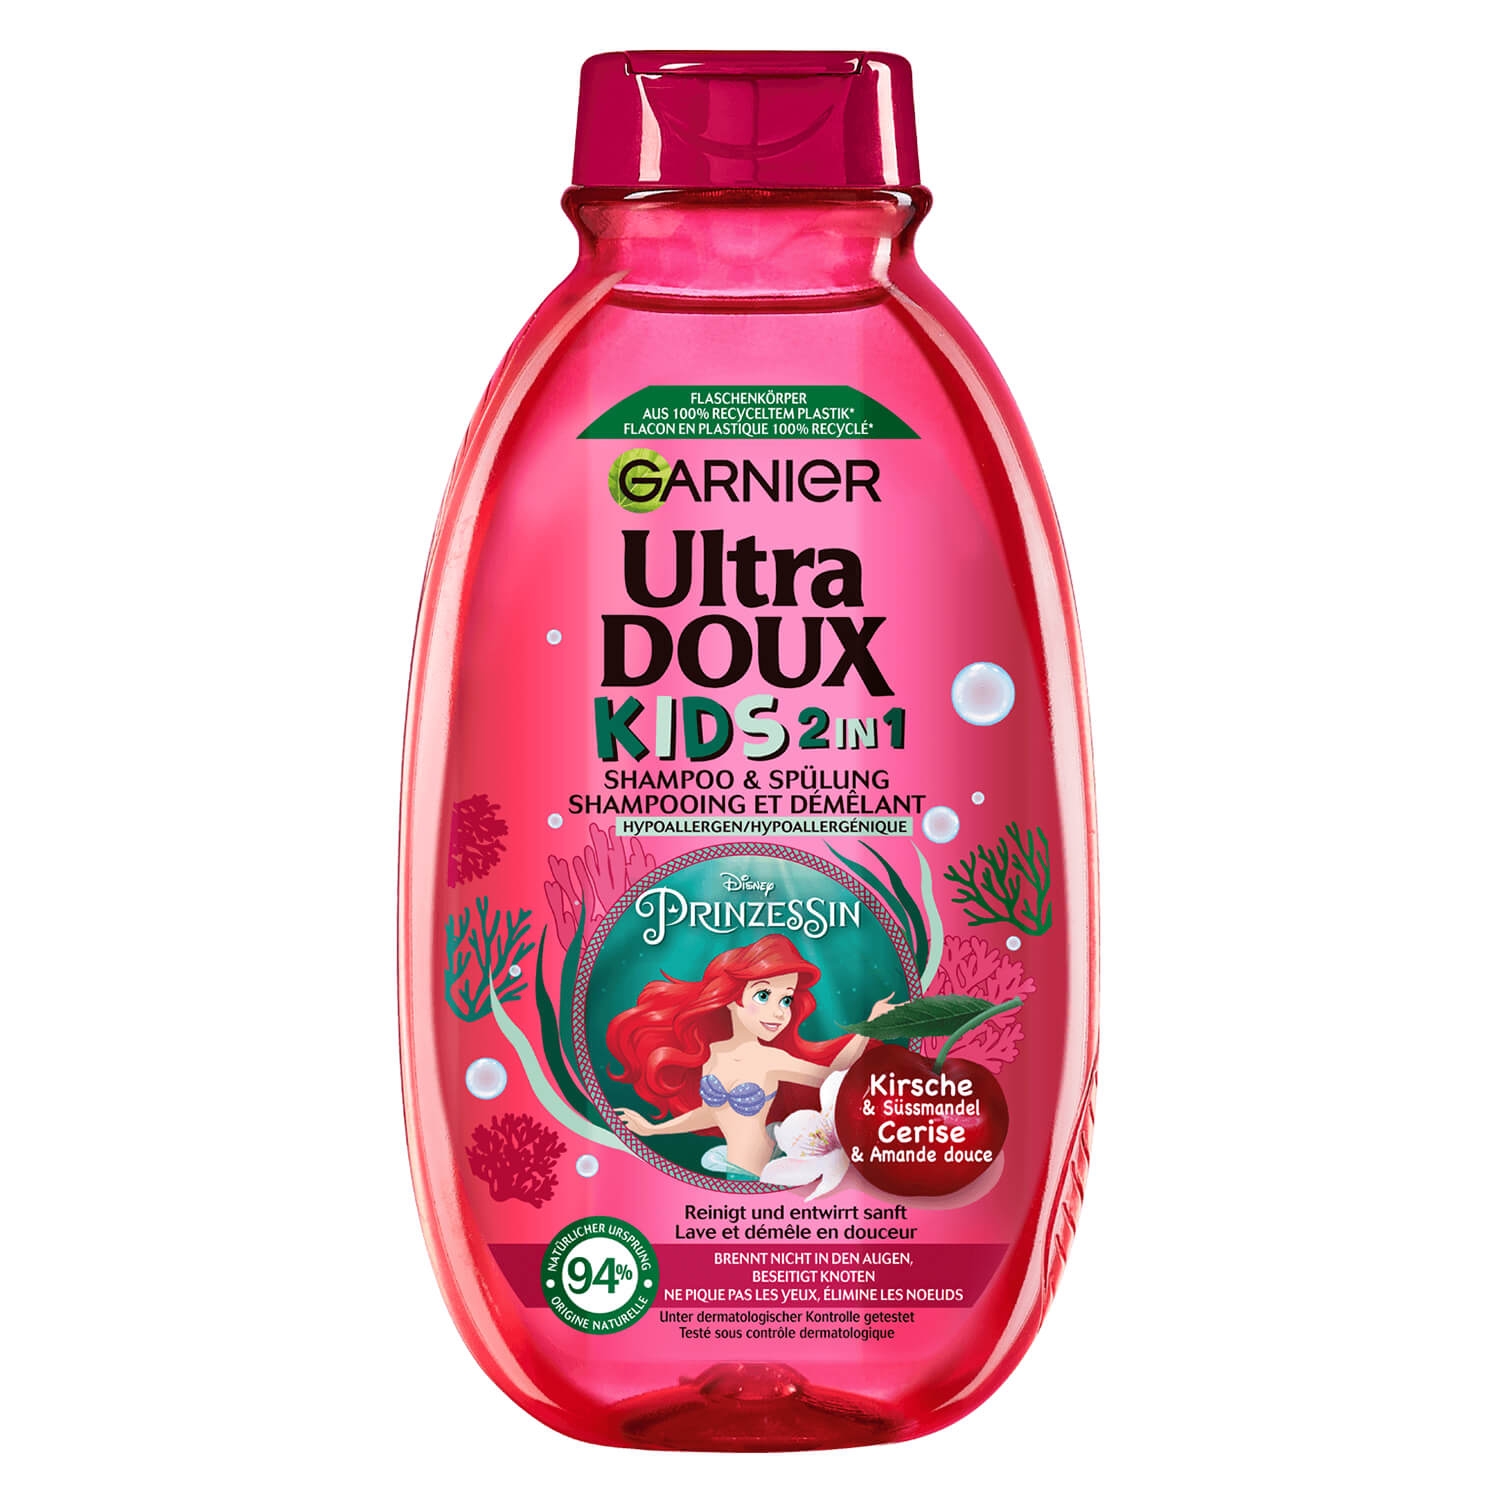 Produktbild von Ultra Doux Haircare - Kids 2in1 Shampoo & Spülung Kirsche & Süssmandel